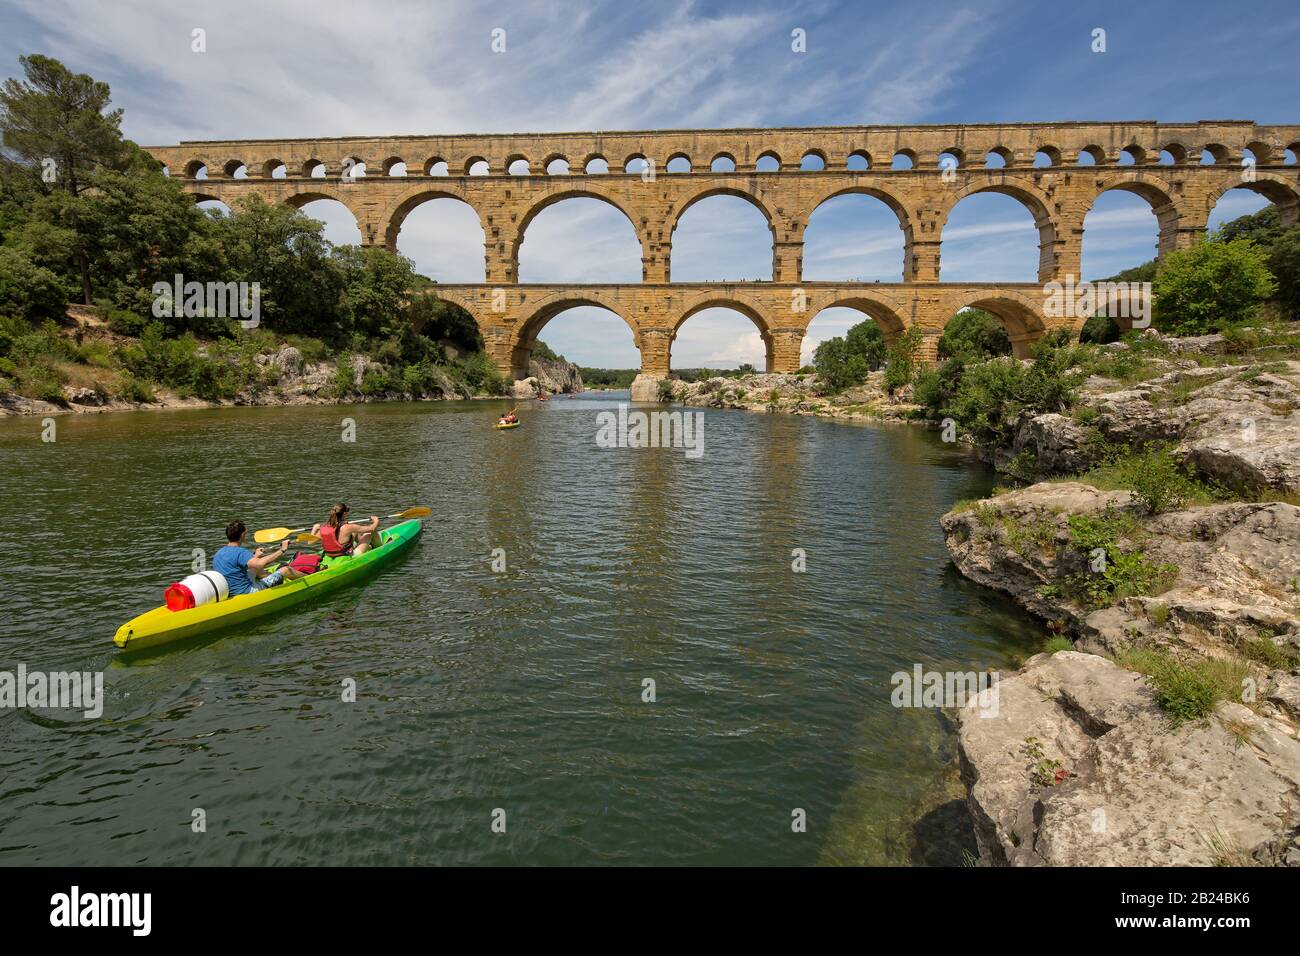 Pont du Gard, Provenza, Francia - Jun 05 2017: La gente kayak en el río Gardon en el Pont du Gard, un antiguo acueducto romano, cerca de Nimes. Foto de stock